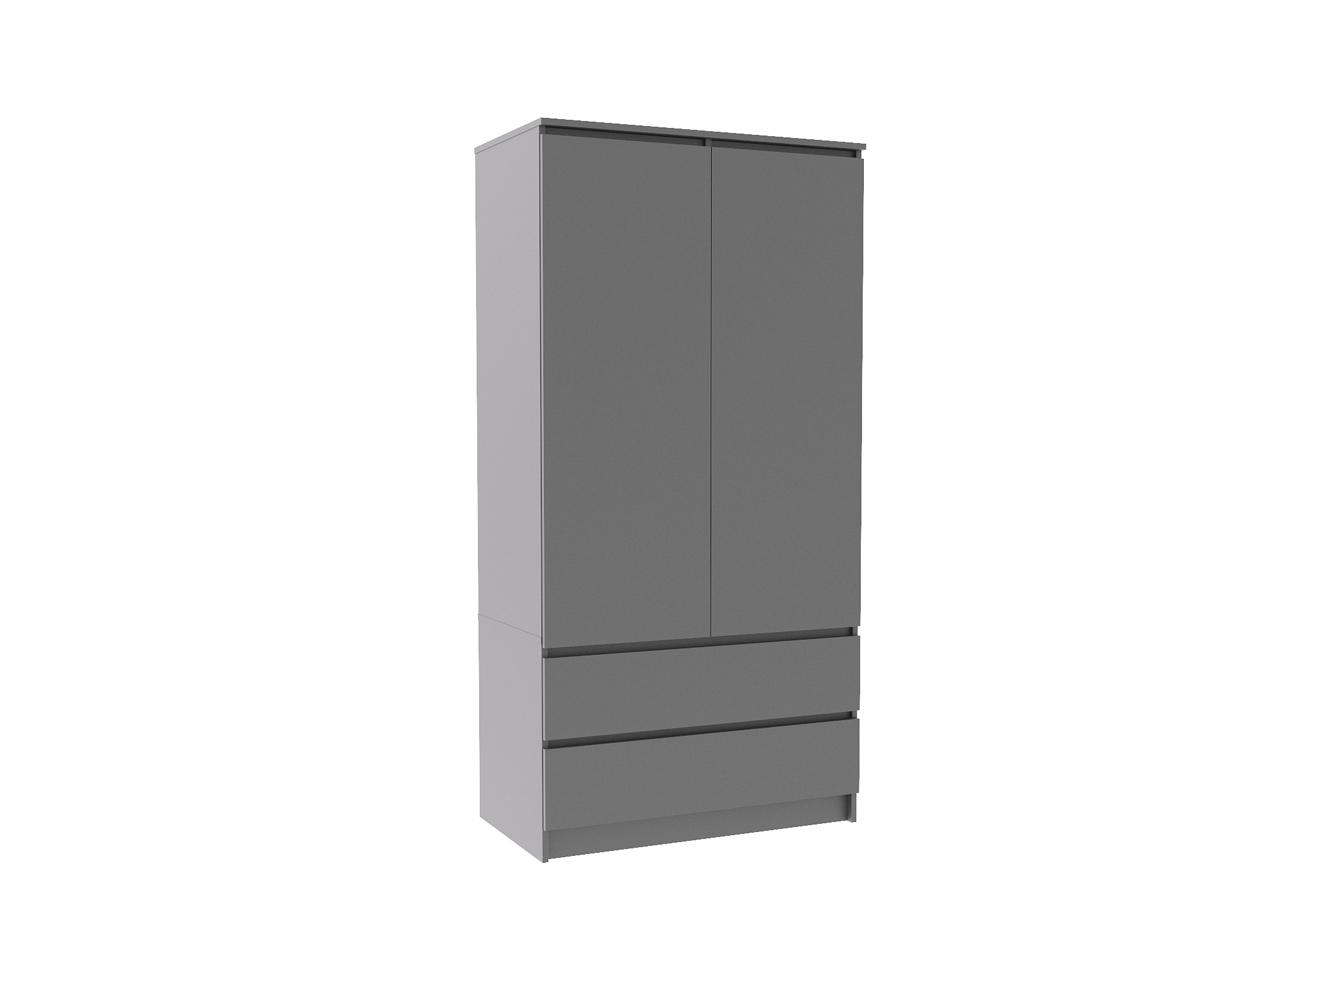 Распашной шкаф Мальм 313 grey ИКЕА (IKEA) изображение товара